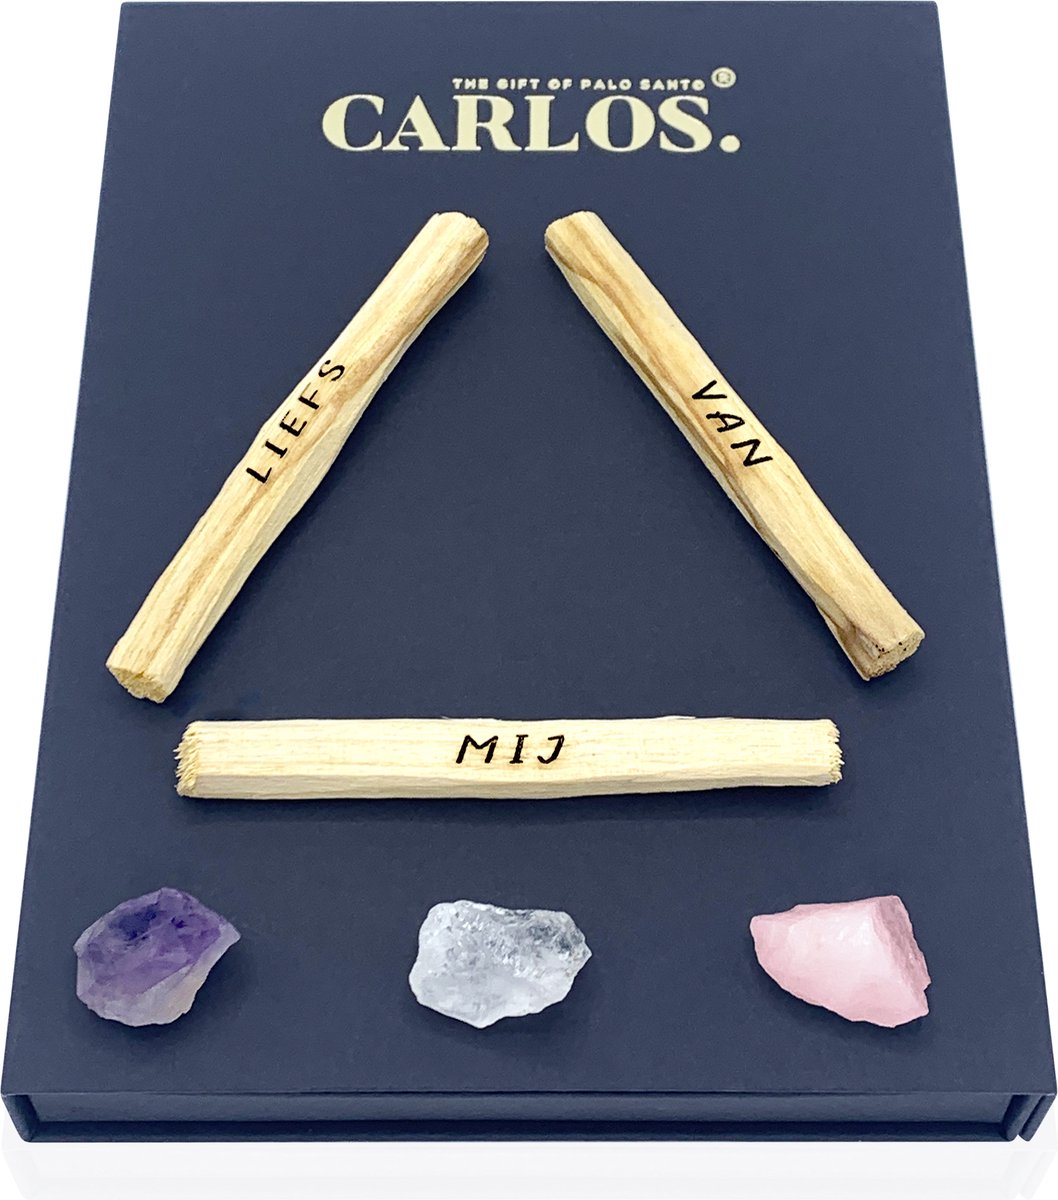 Luxe giftset PALO SANTO met gegraveerde boodschap LIEFS VAN MIJ + 3 edelstenen: amethist, bergkristal, rozenkwarts.